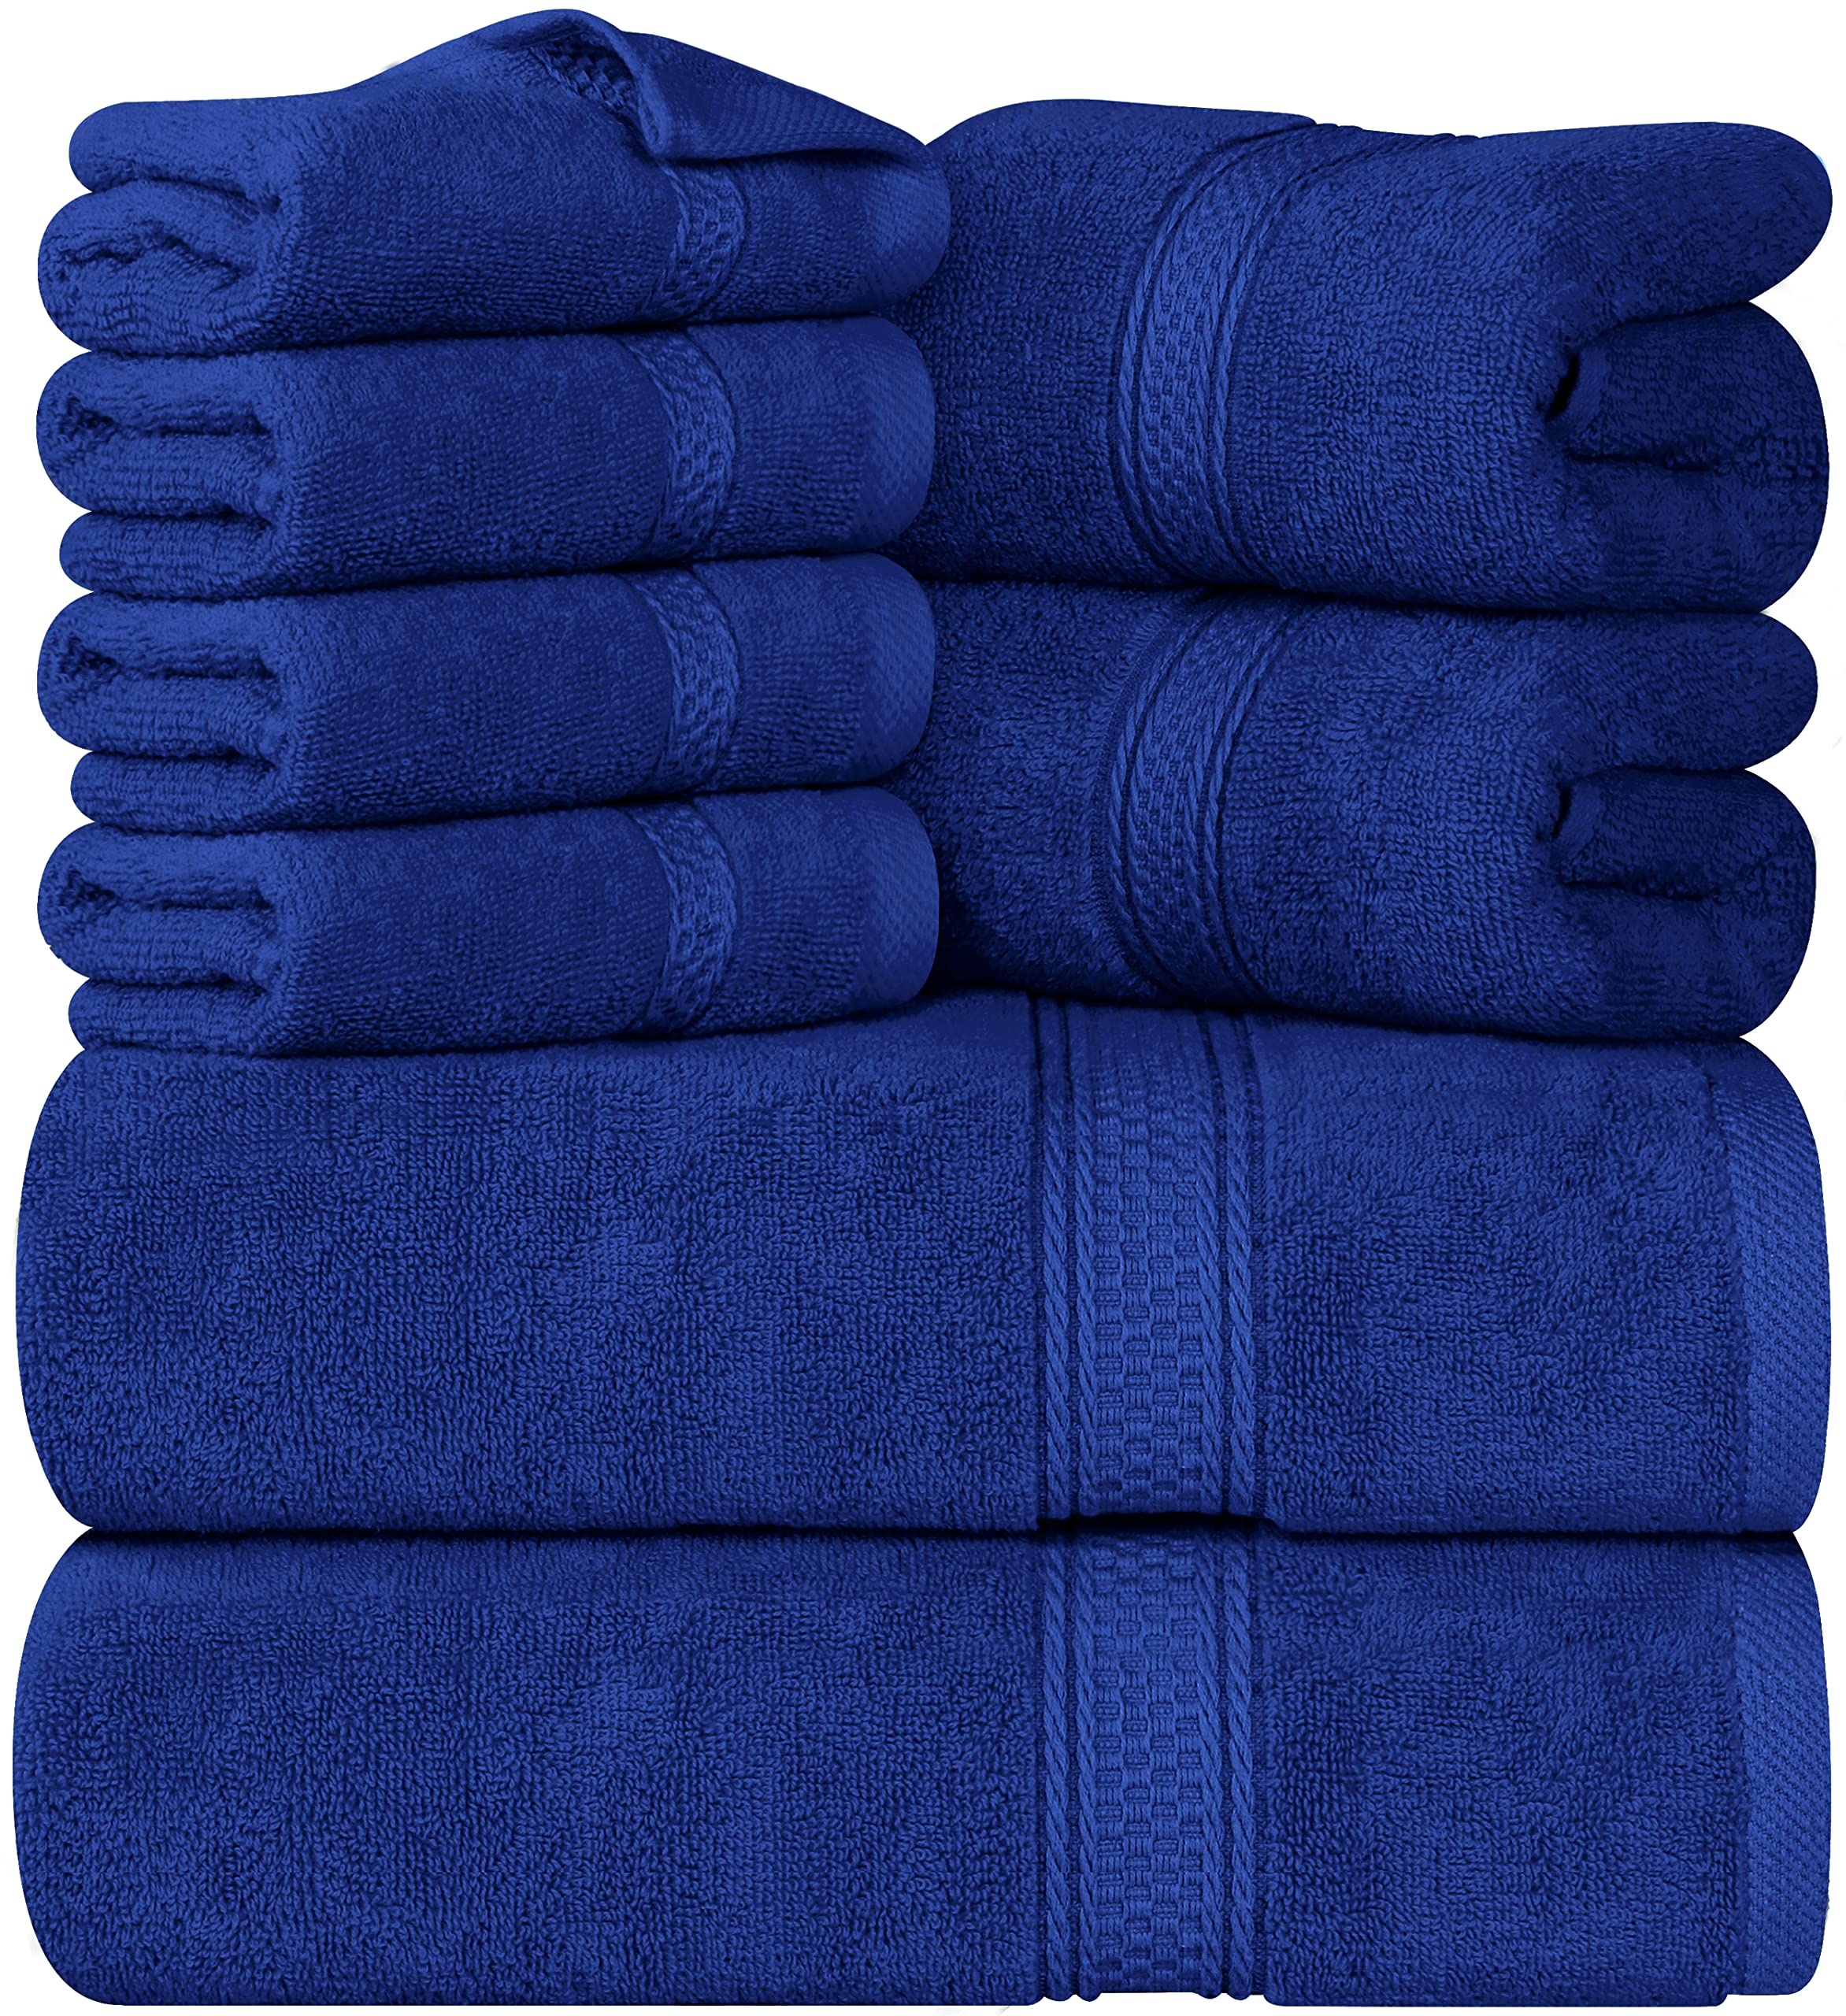 Utopia Towels 8-teiliges Premium-Handtuch-Set, 2 Badetücher, 2 Handtücher und 4 Waschlappen, 600 g/m2, 100% ringgesponnene Baumwolle, Fitnessstudio, Hotel und Spa (Königsblau)